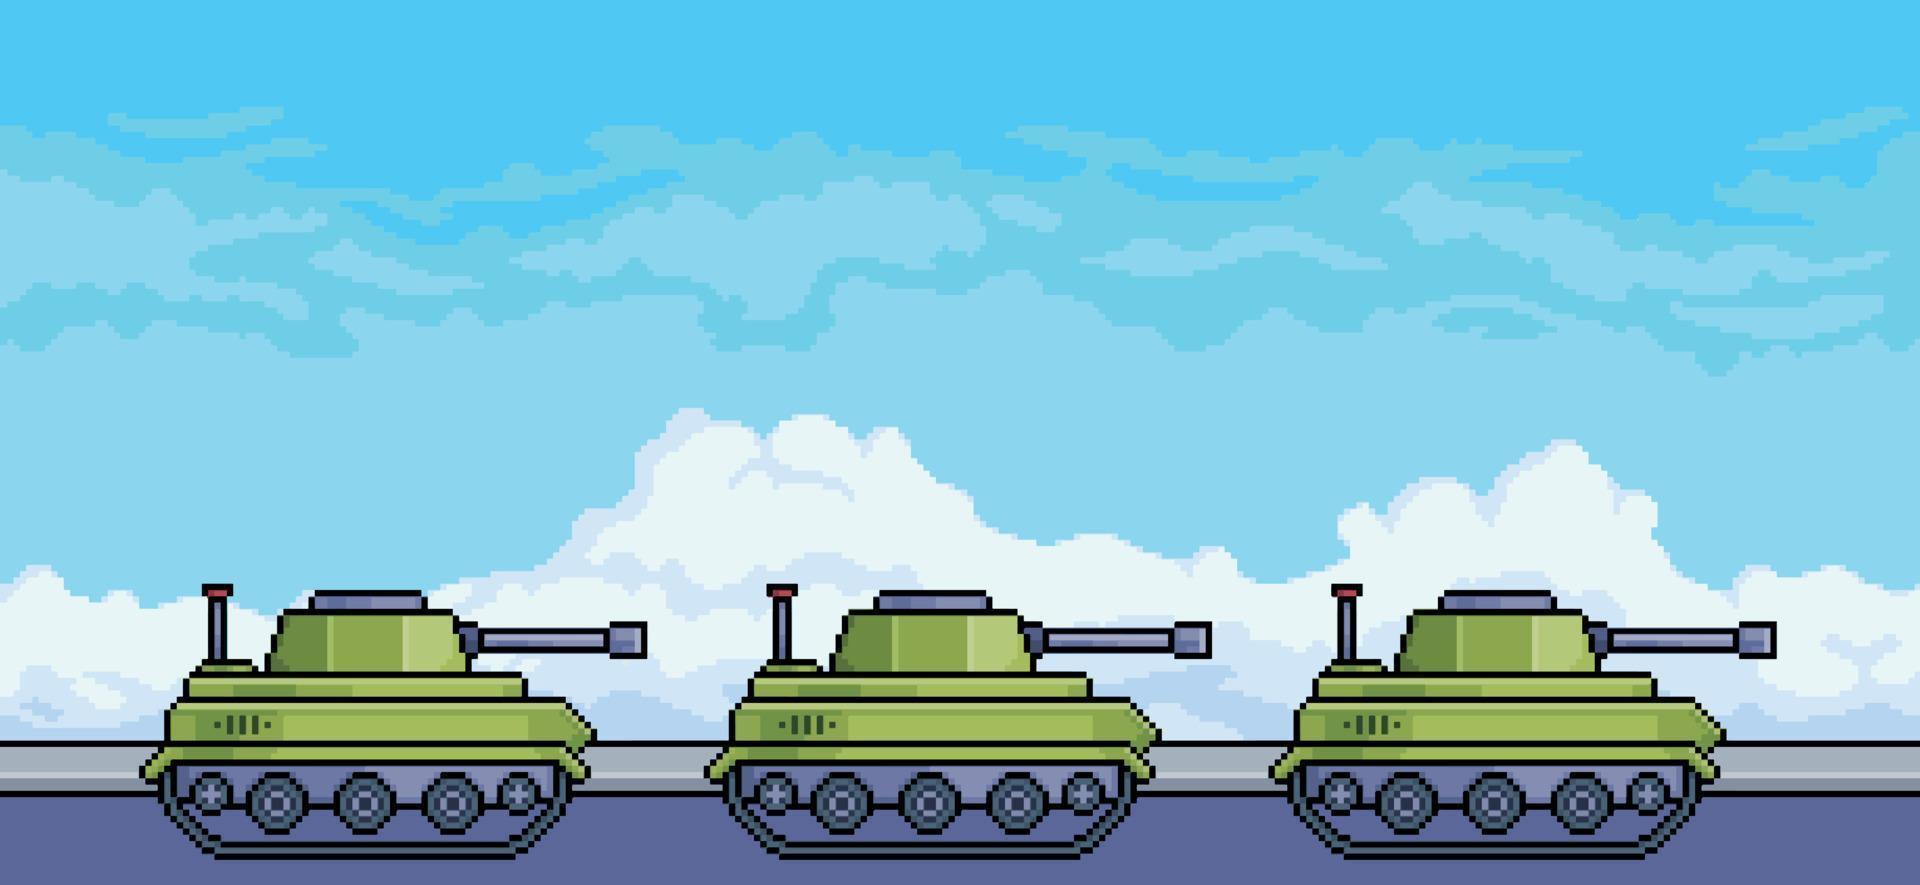 pixel konst konvoj av krig tankar på de gata med blå himmel bakgrund vektor scen för 8bit spel